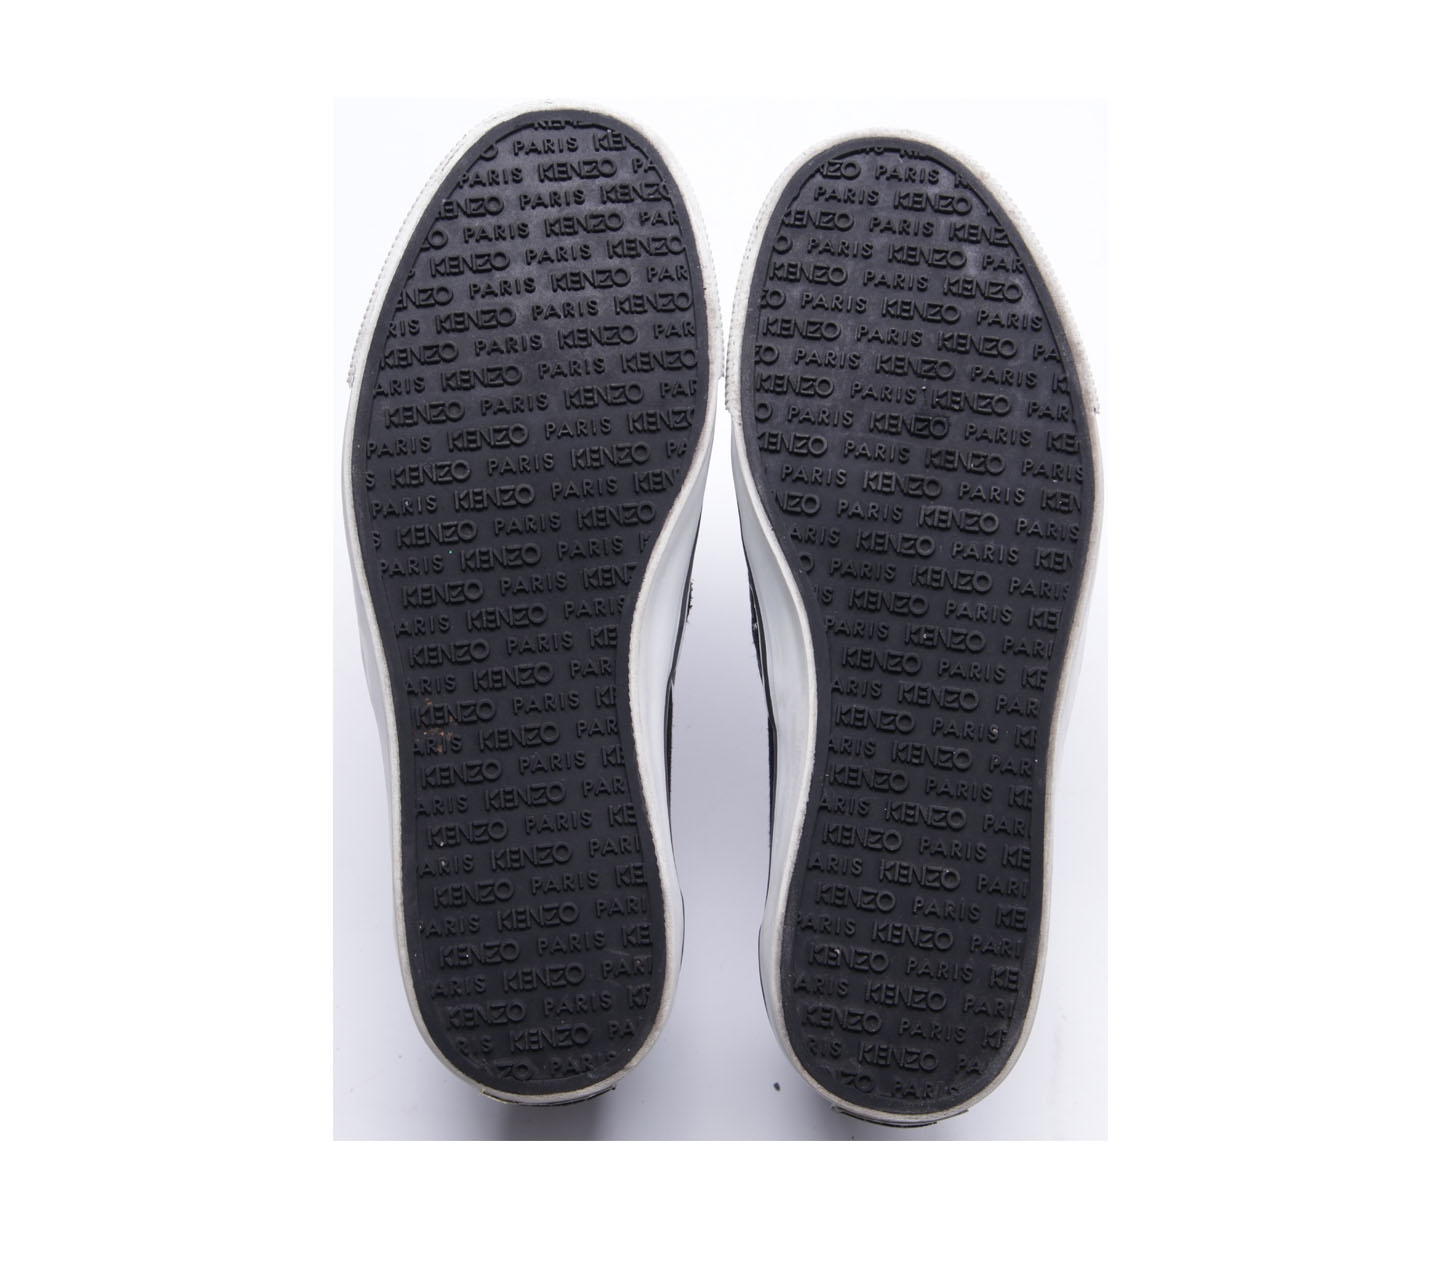 Kenzo Black Sneakers Slip On